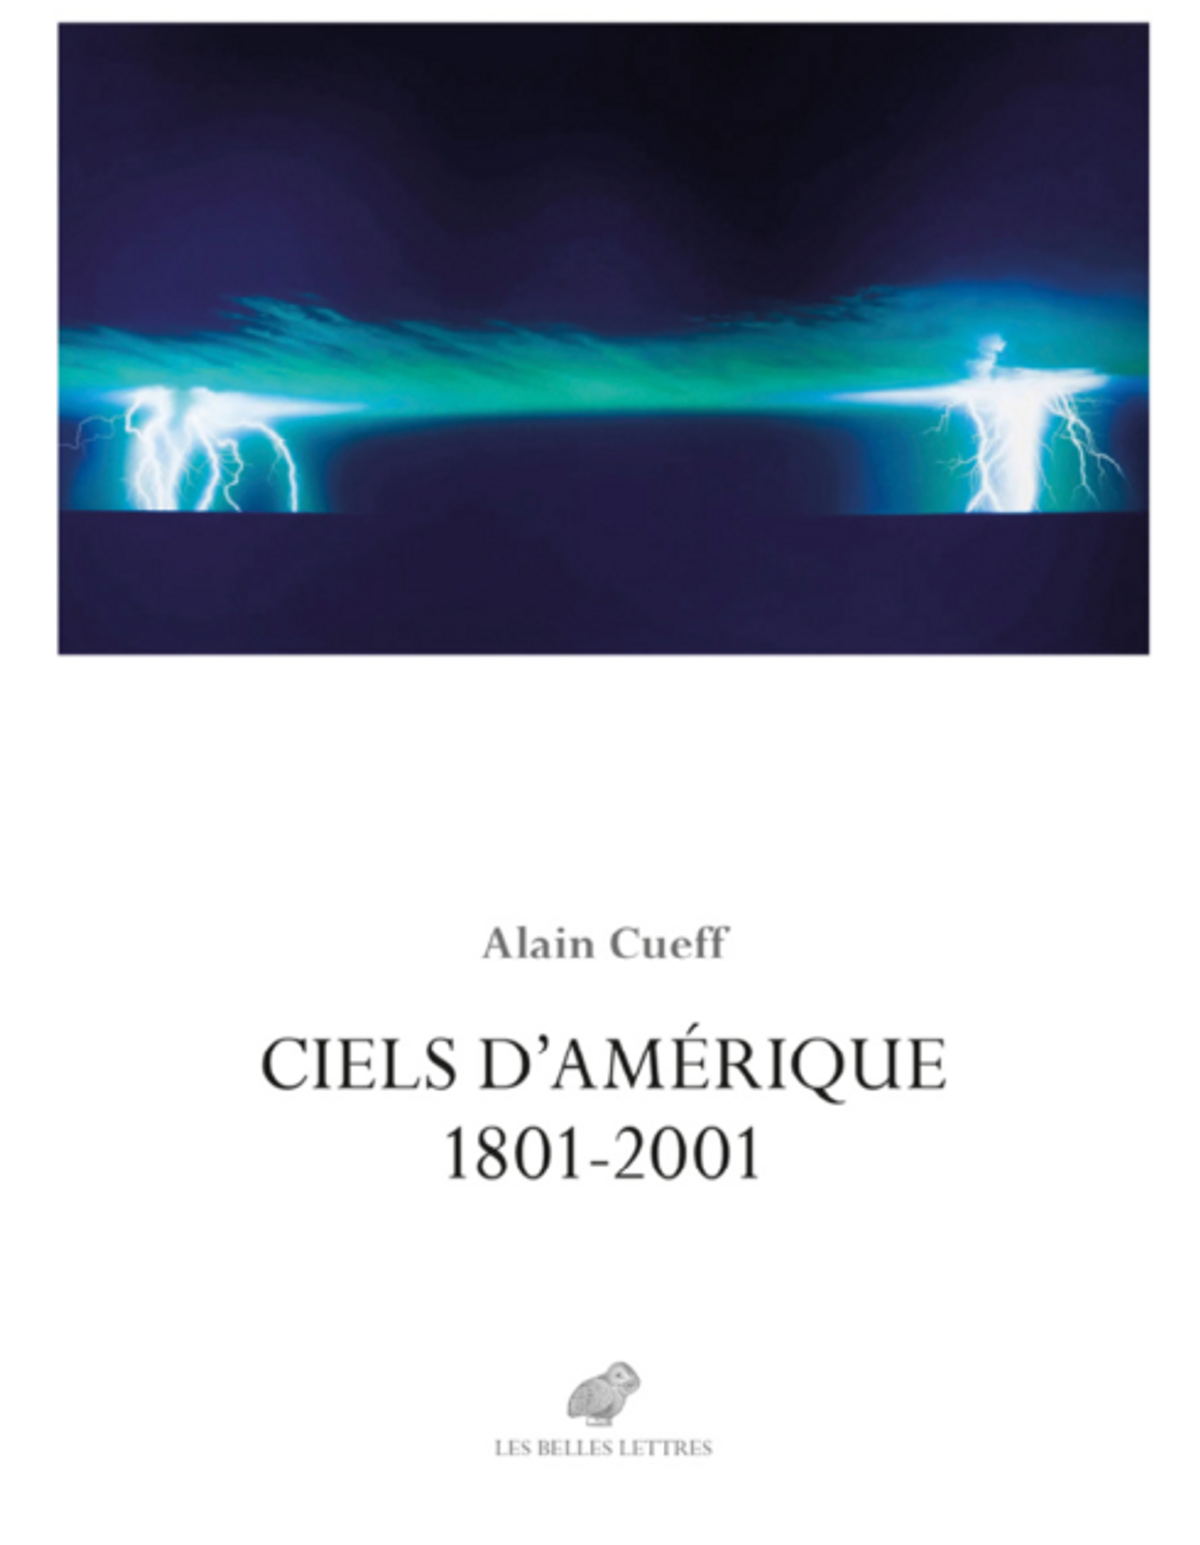 Alain Cueff, Ciels d’Amérique. 1801-2001, Paris, Les Belles Lettres, 2023, 576 pages, 230 illustrations, 39,50 euros.